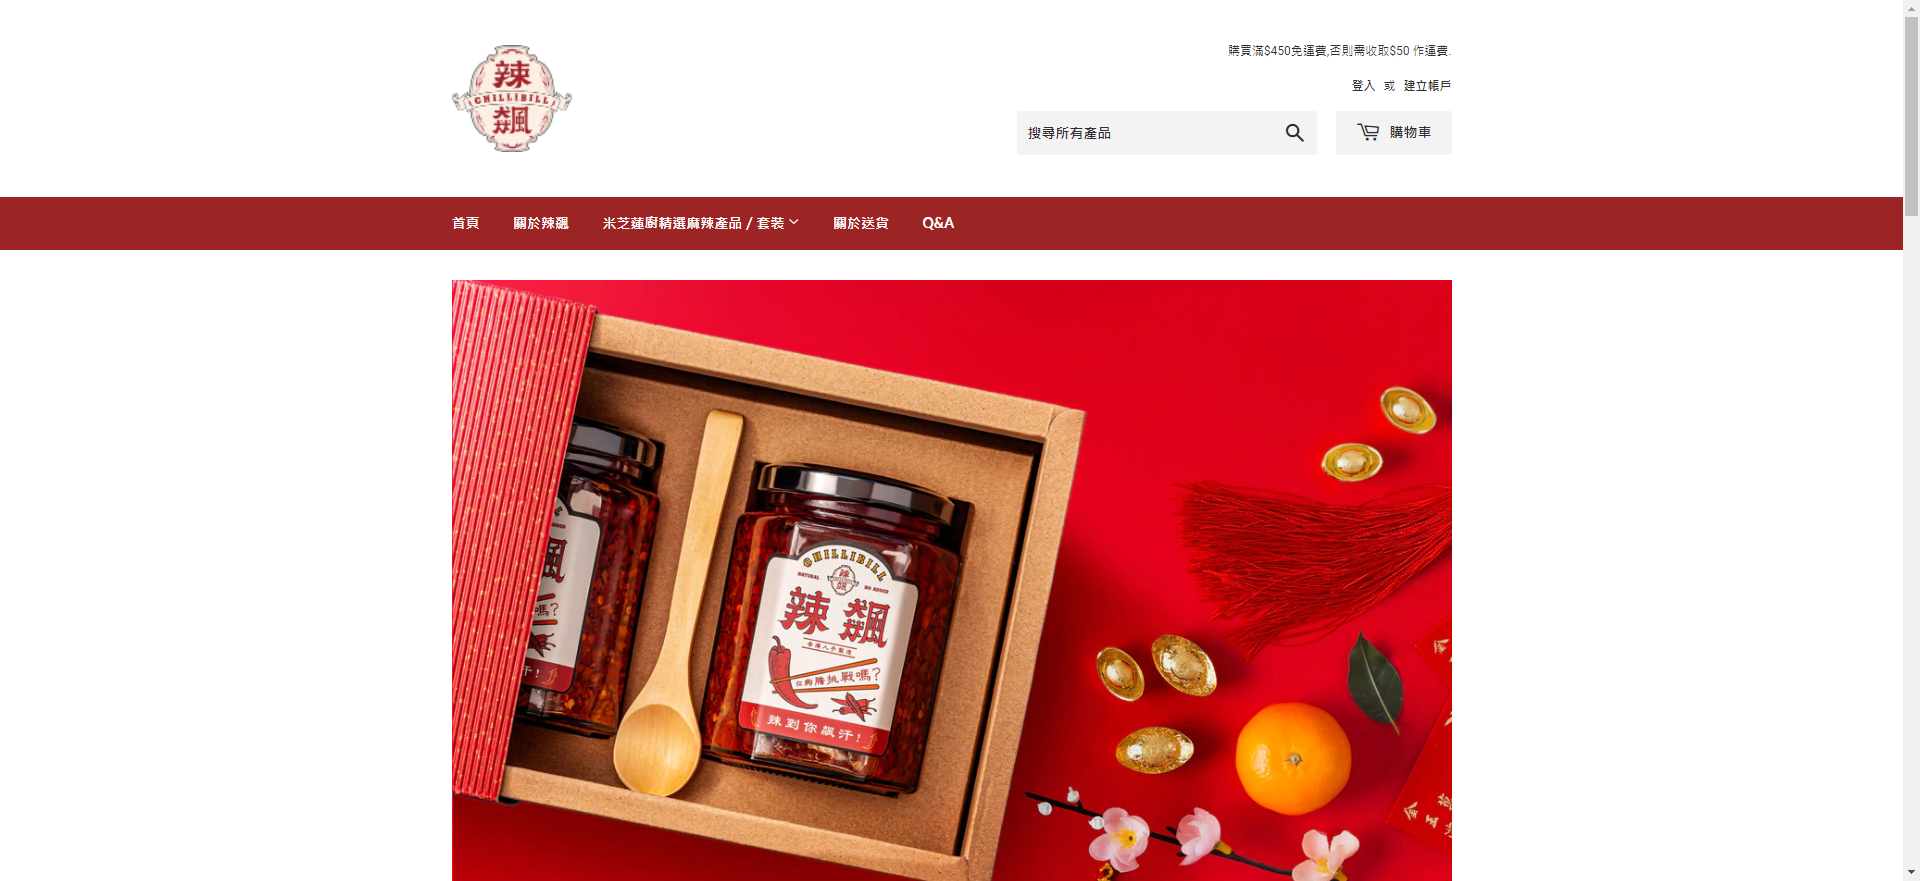 hong kong online store selling food 